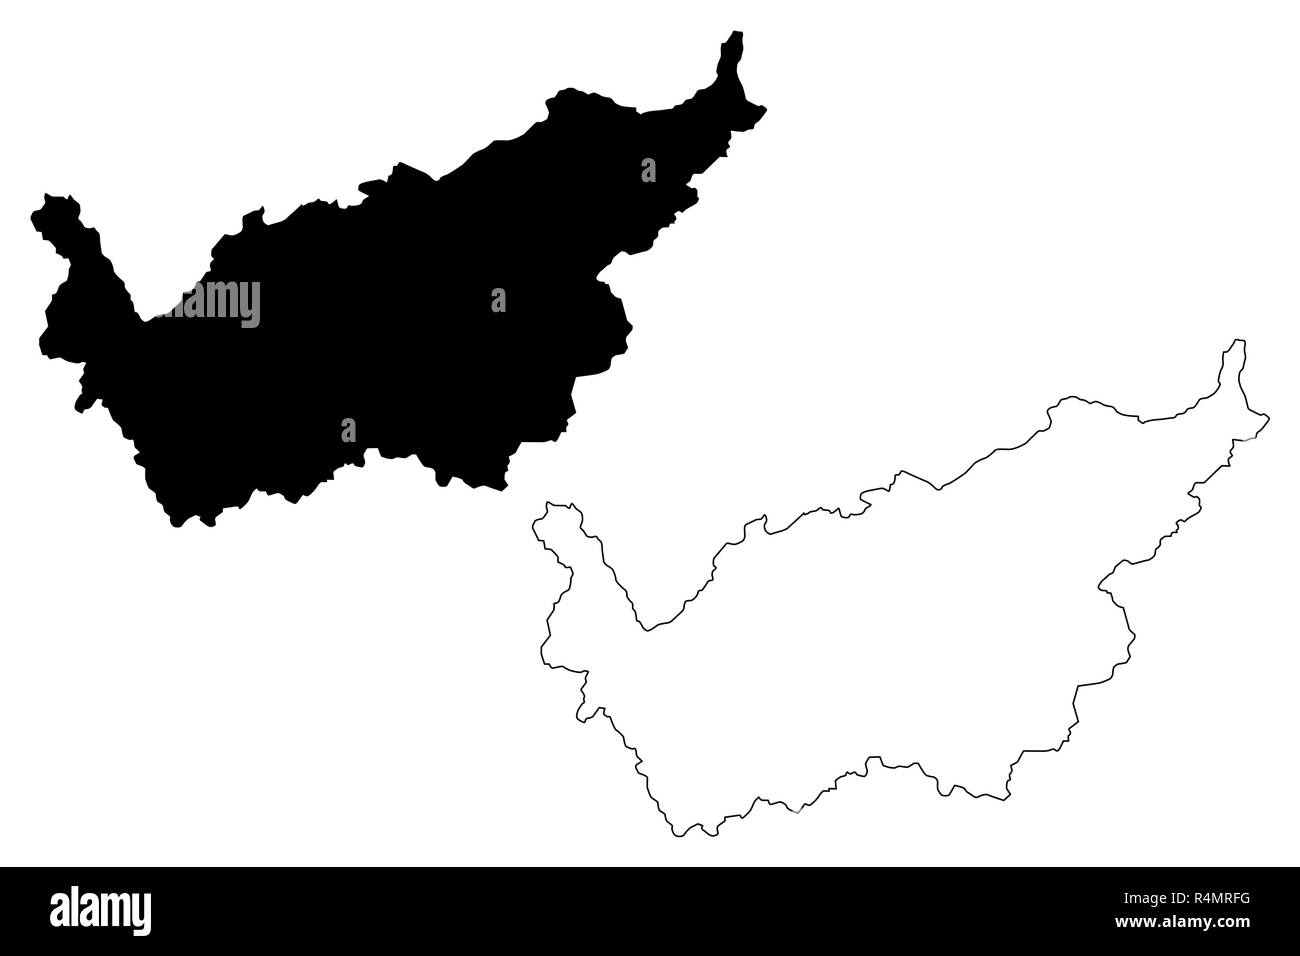 Wallis (Kantone der Schweiz Schweizer Kantone, Bund) Karte Vektor-illustration, kritzeln Skizze Kanton Wallis Karte Stock Vektor